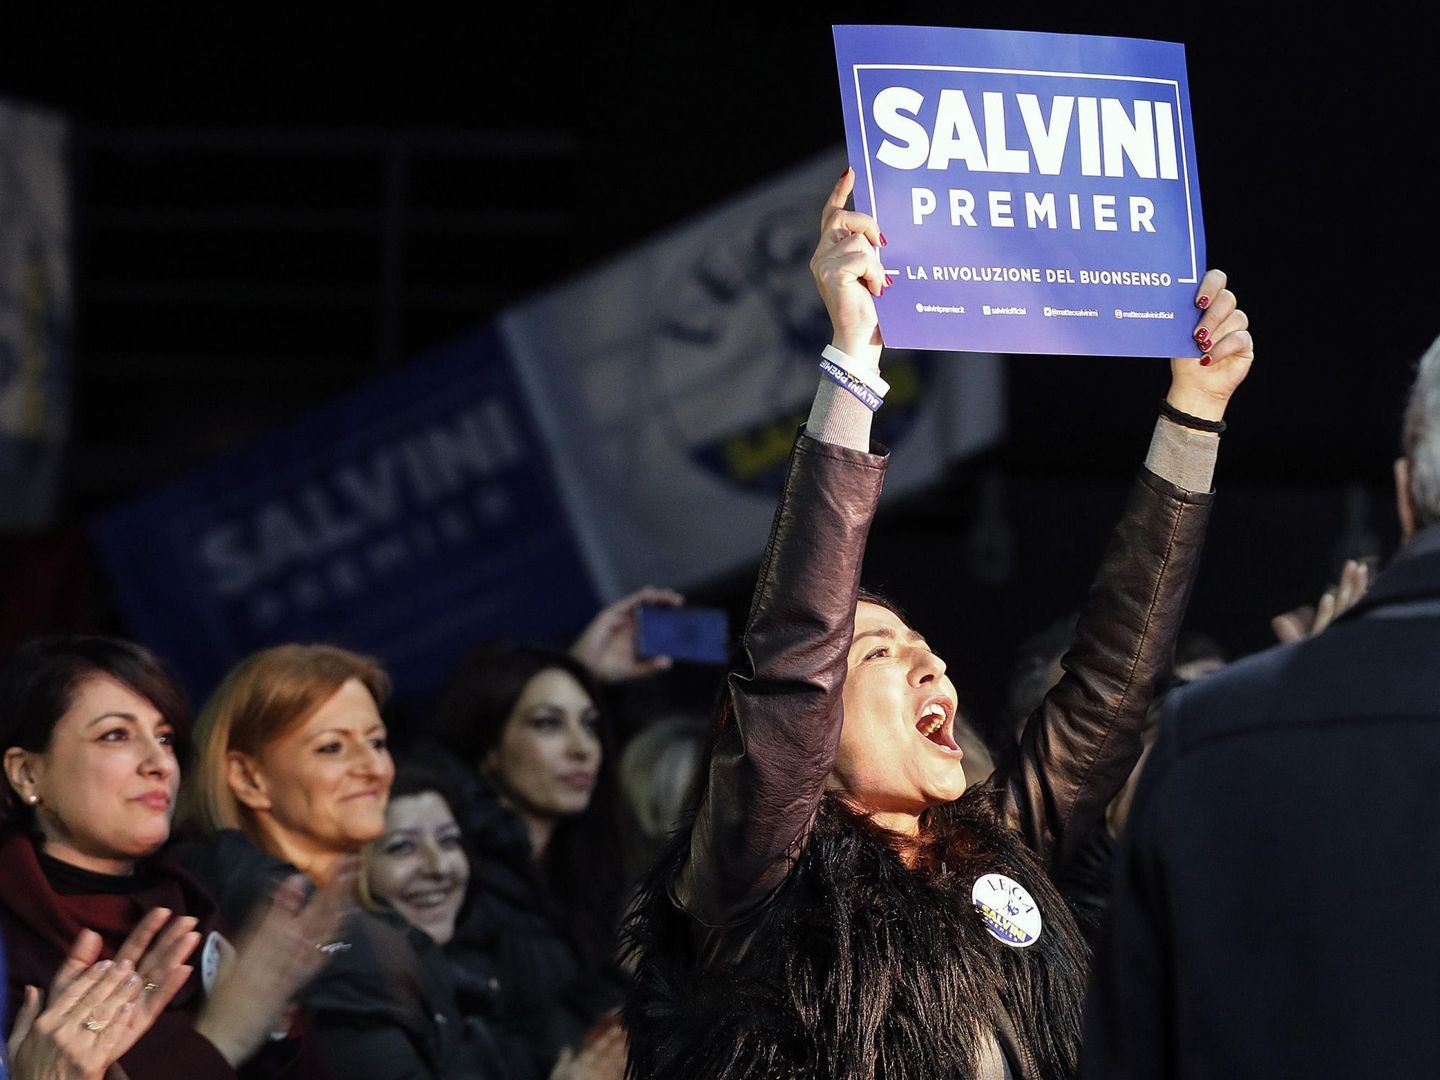 Una mujer sujeta un cartel de apoyo al candidato para primer ministro Matteo Salvini durante un mitin electoral en Roma. (EFE)